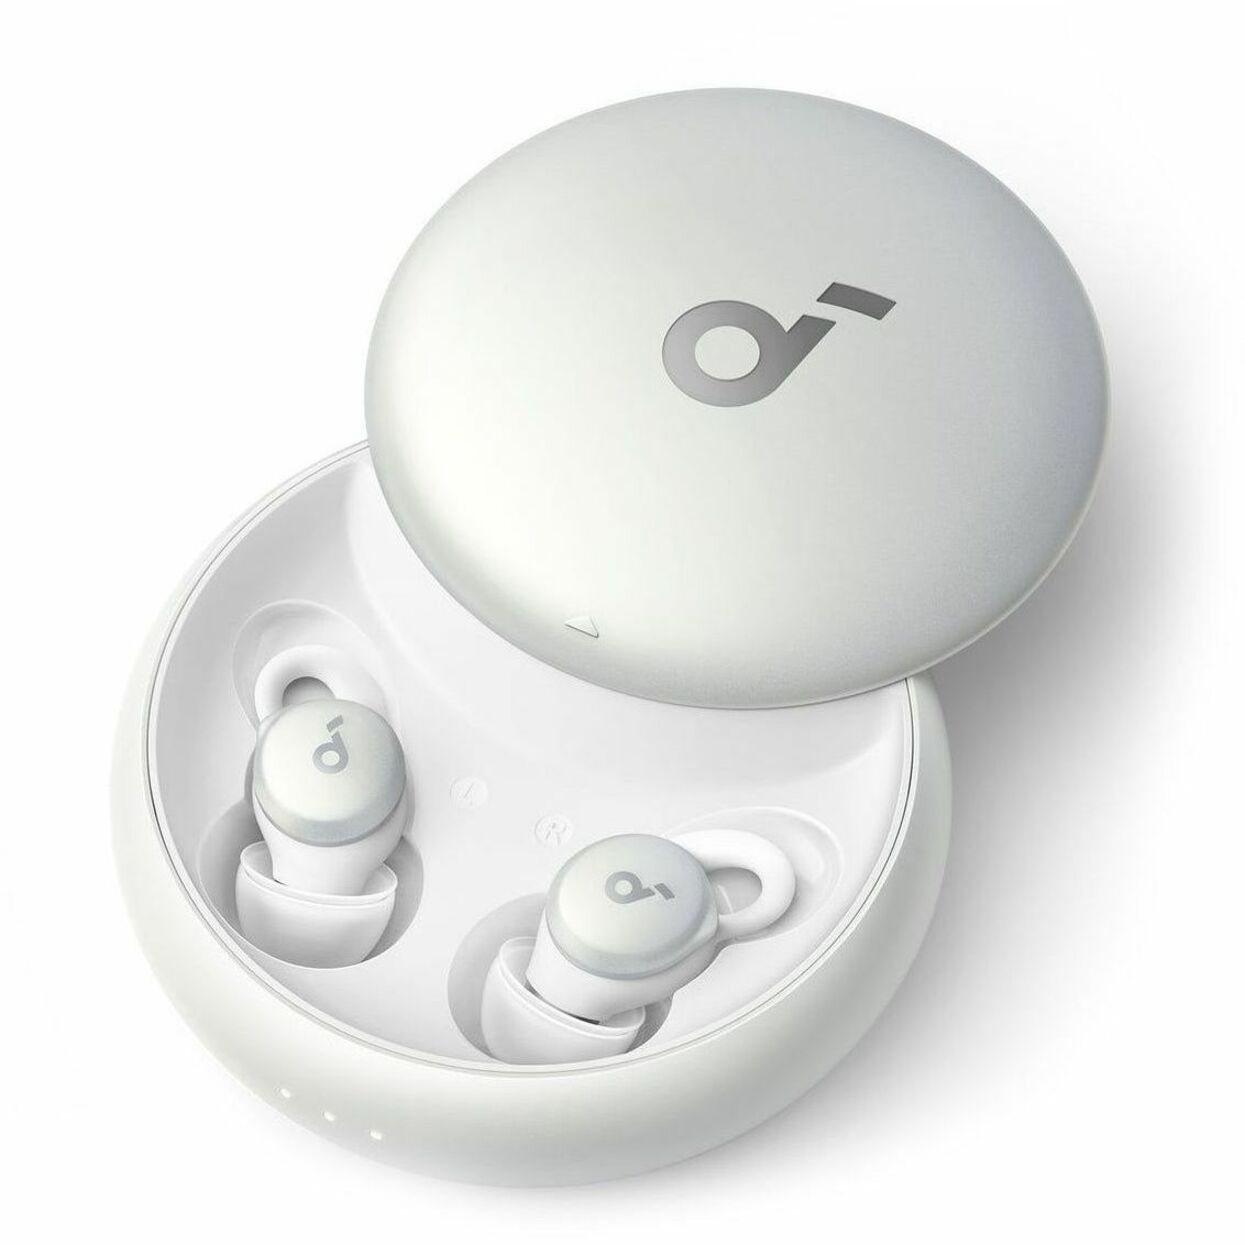 soundcore A6610Z21 Sleep A10 All-New Sleep Earbuds for Better Sleep, Comfortable, Lightweight, Bluetooth 5.2